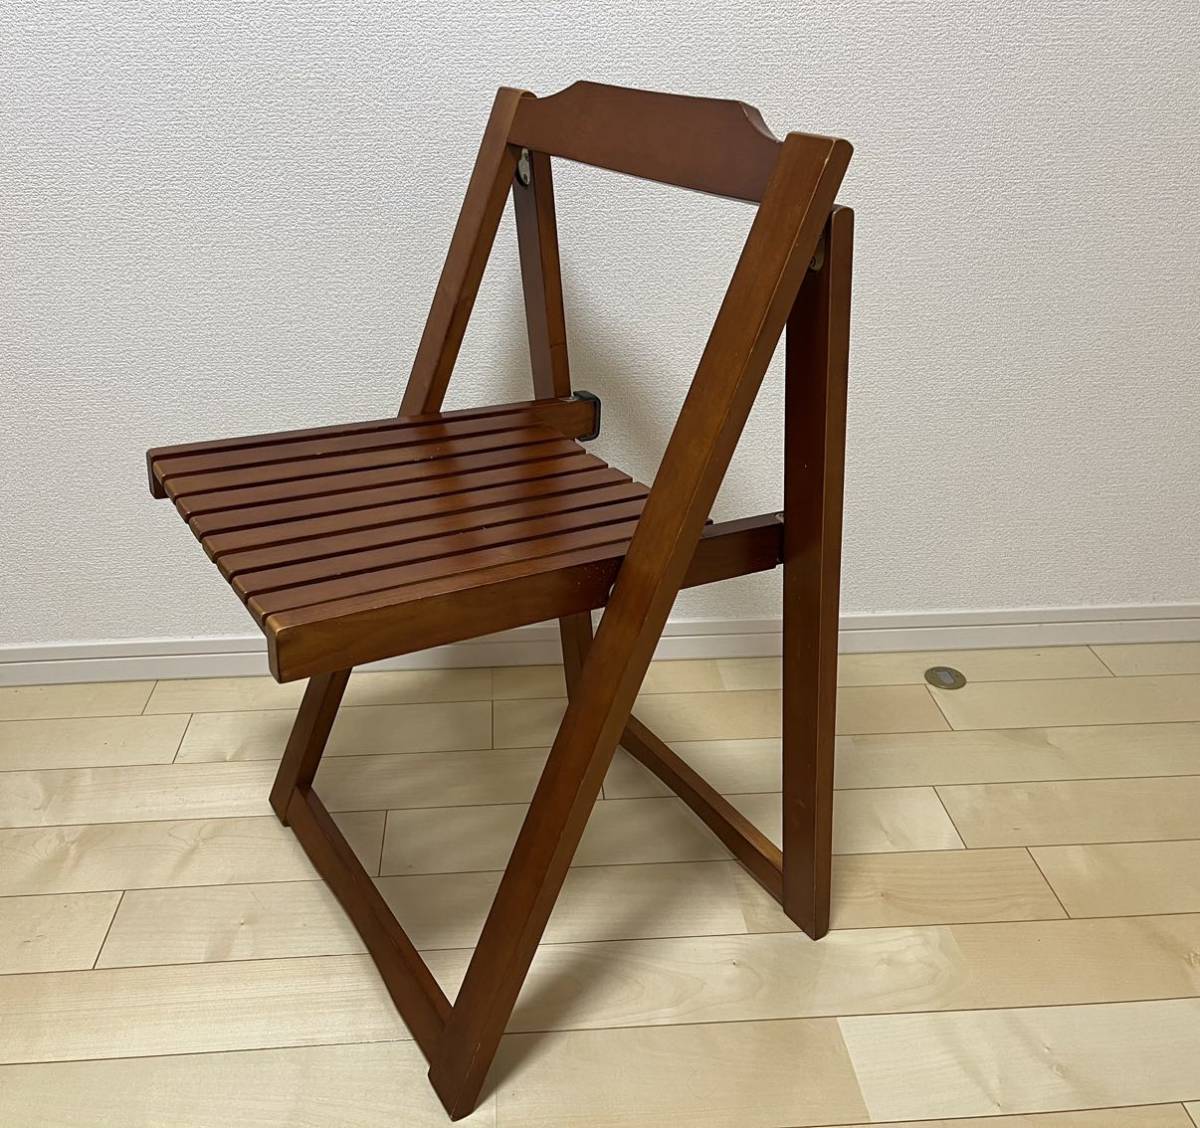 人気商品ランキング 木製 折り畳み椅子 フォールディングチェア 4脚 